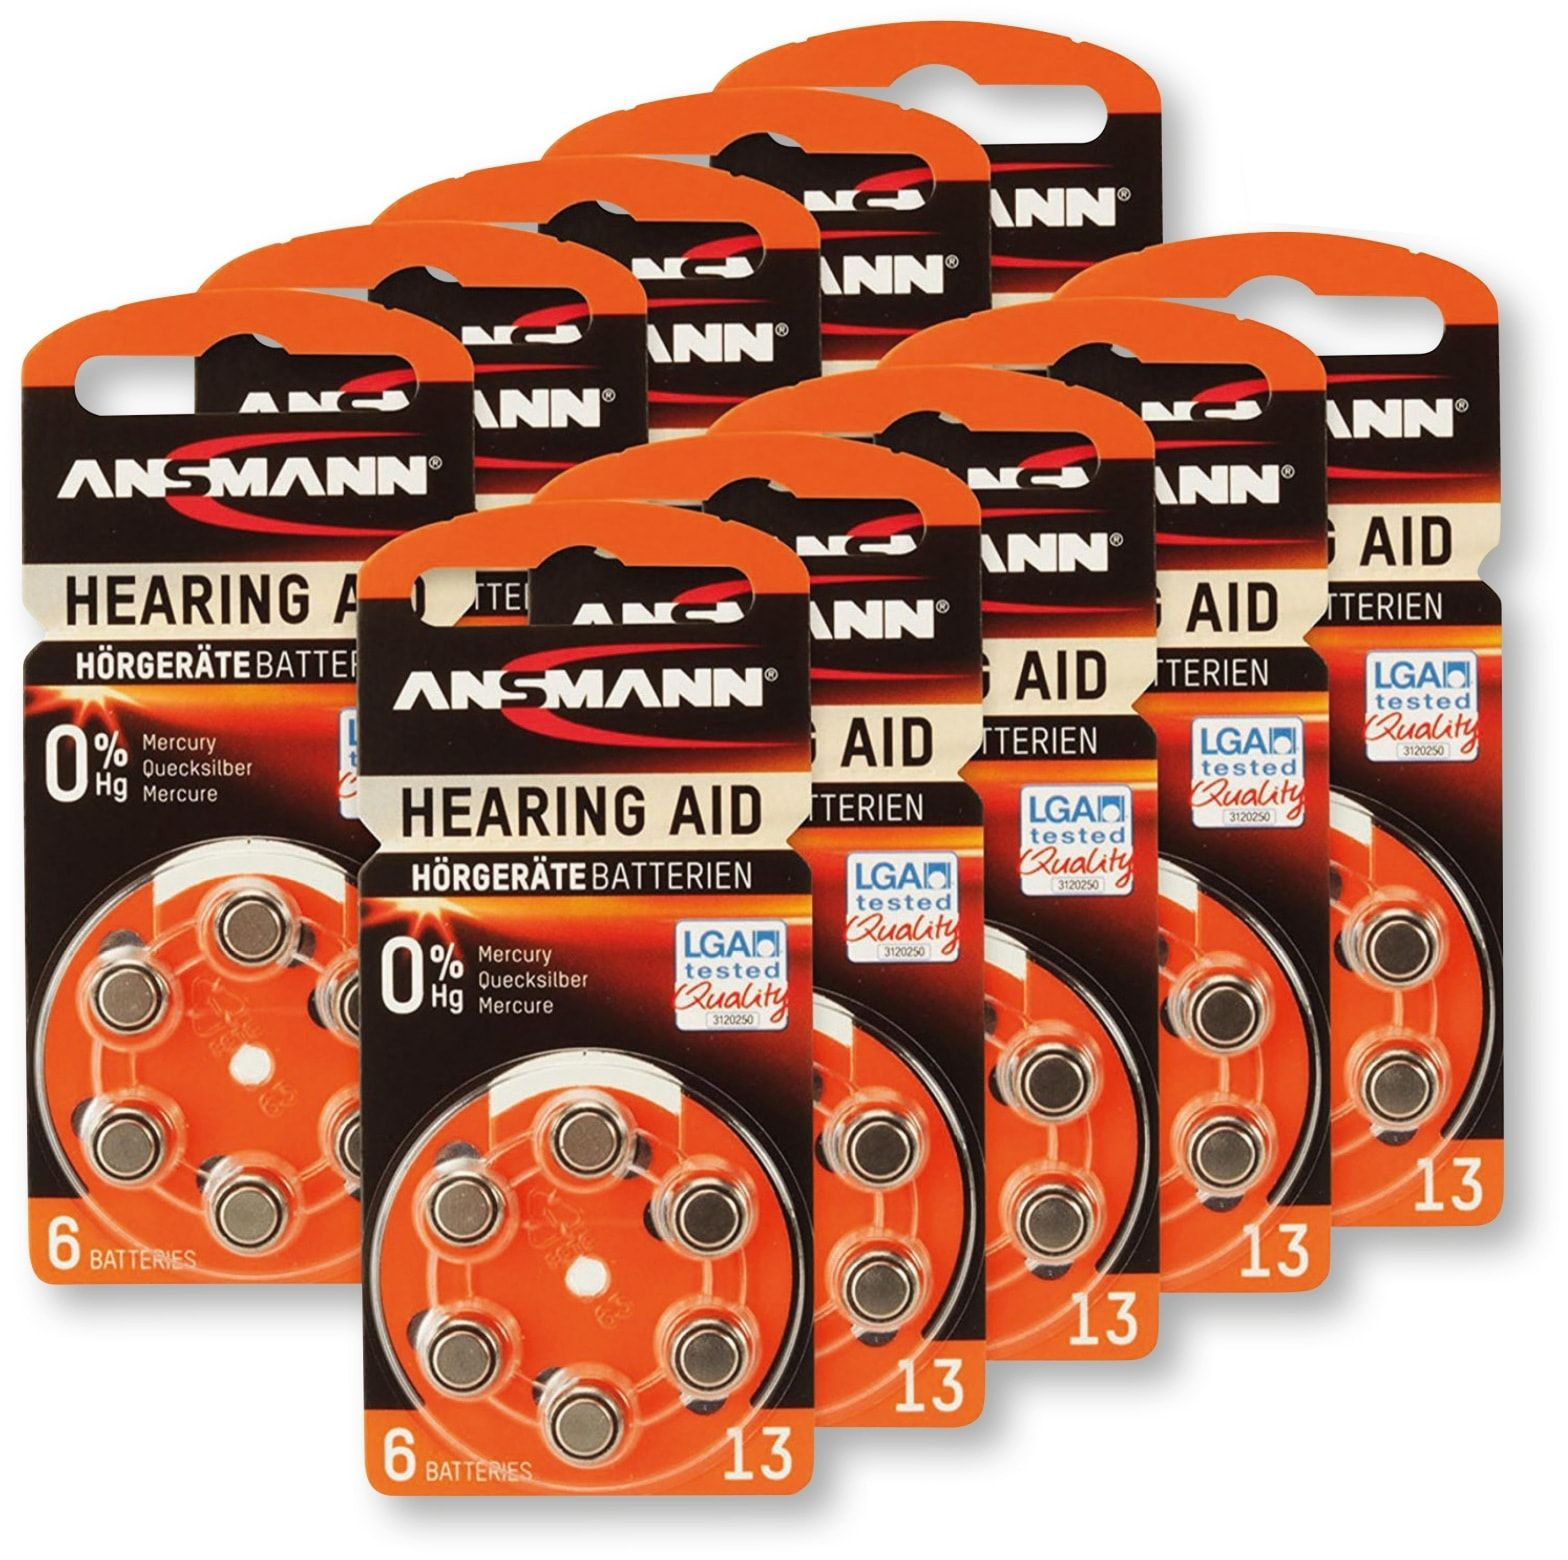 ANSMANN Hörgeräte-Batterie, HEARING AID, Hörgeräte-Batterie Stück 60 Größe PR48, 13, Zink-Luft